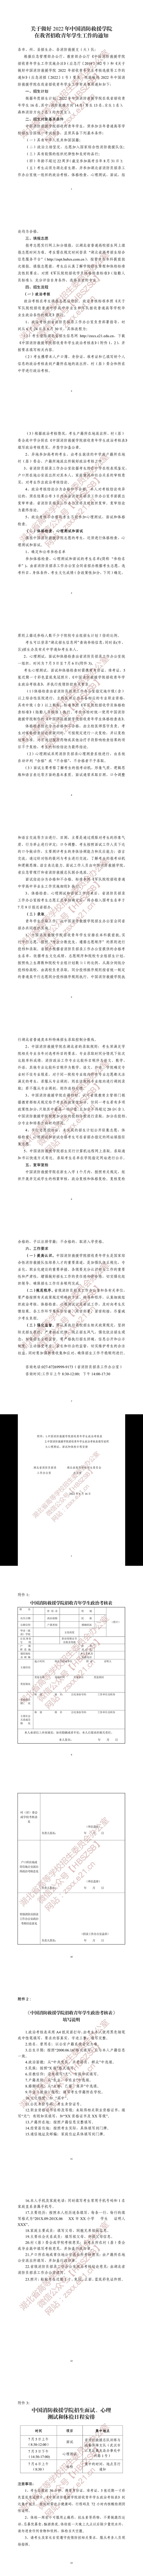 关于做好2022年中国消防救援学院在我省招收青年学生工作的通知.jpg